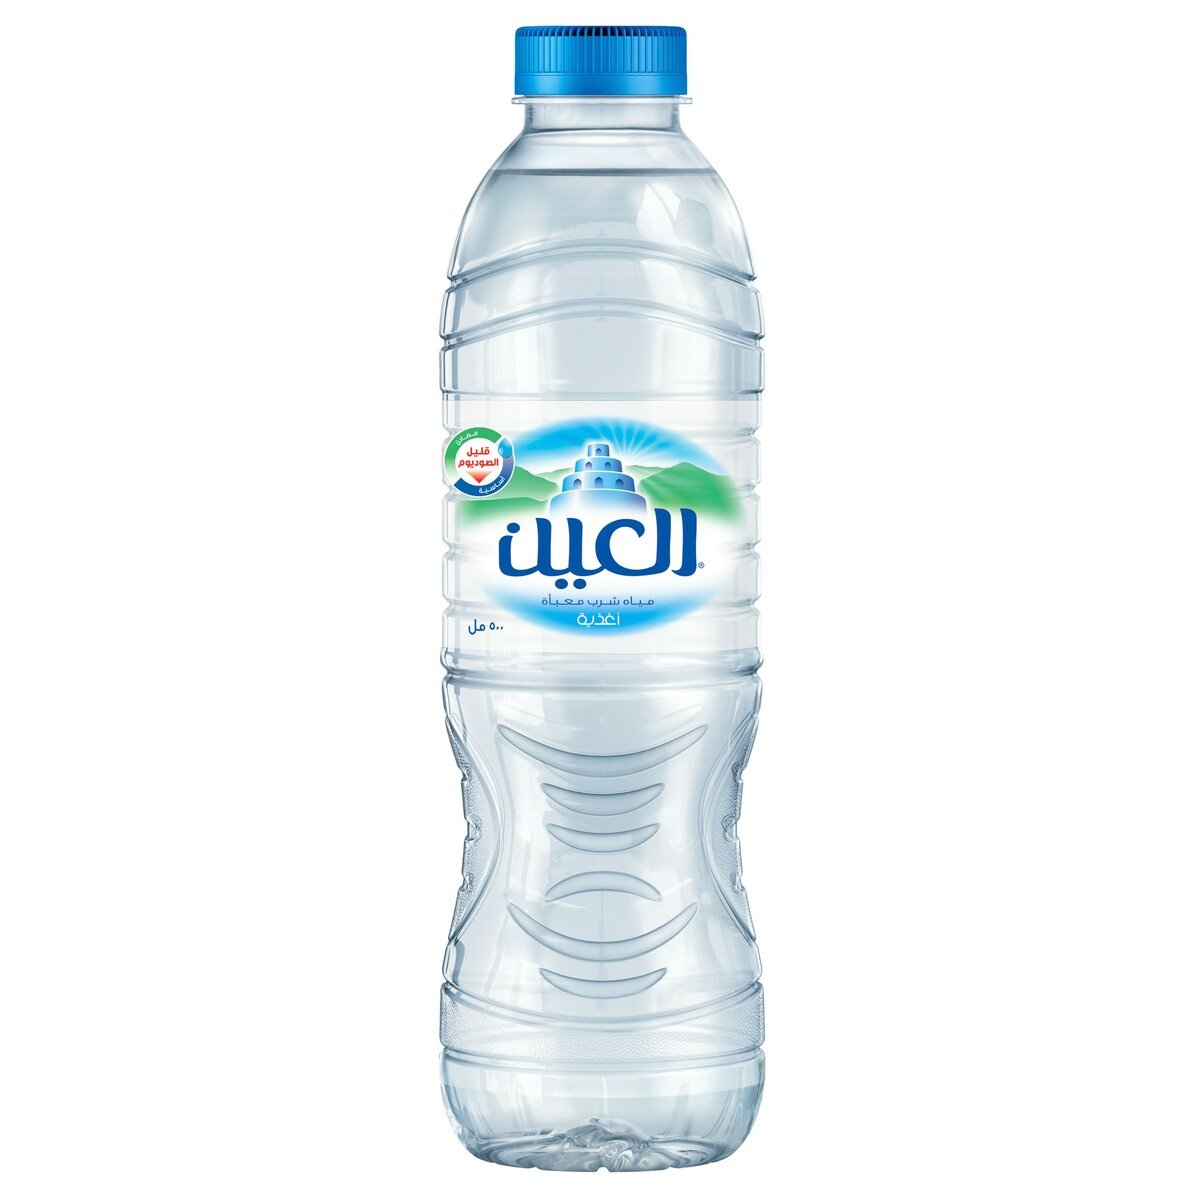 Al Ain Bottled Drinking Water 24 x 500 ml